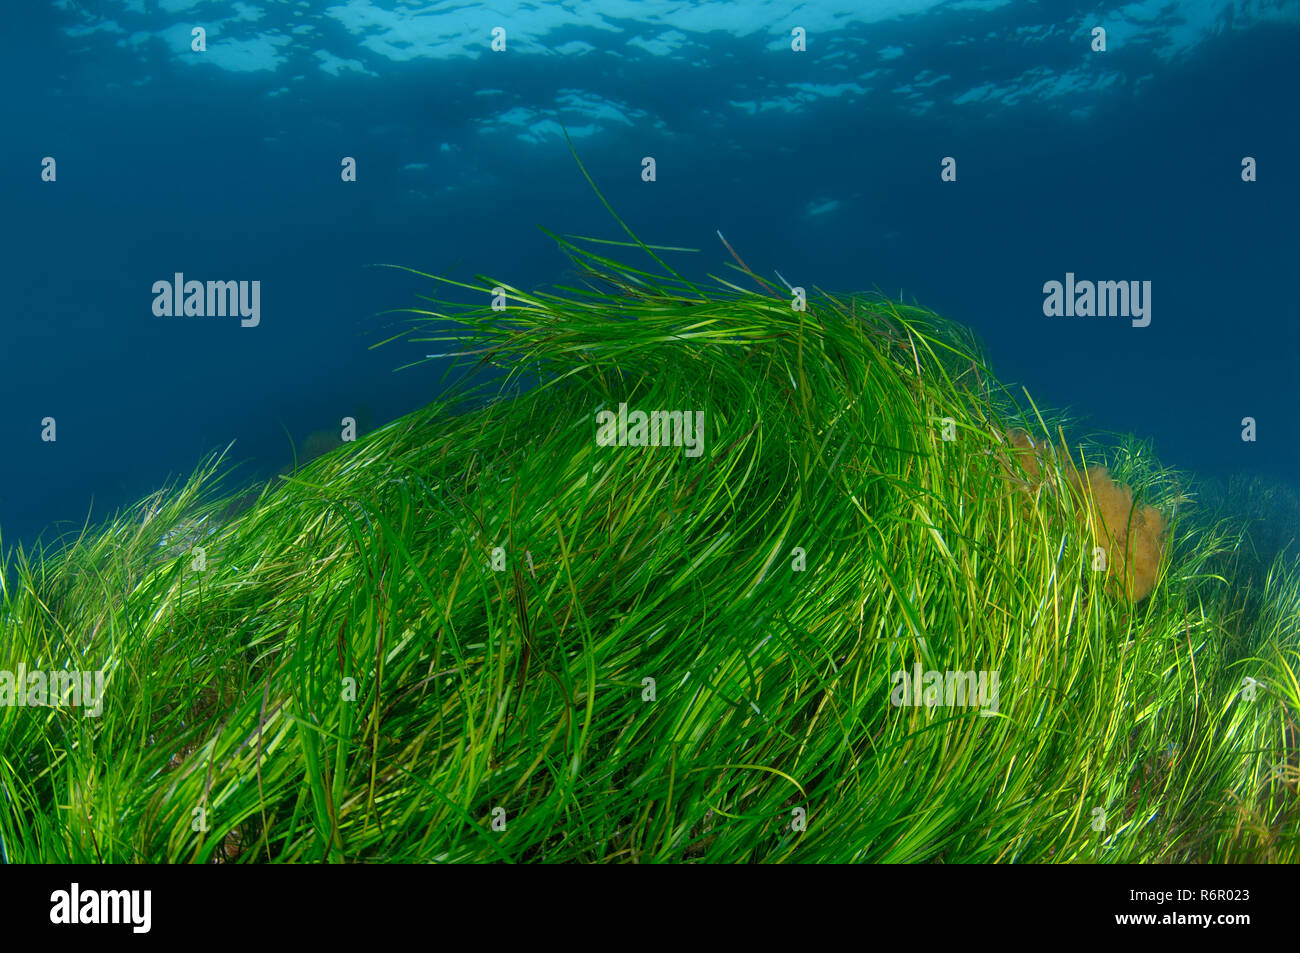 Subacquea piante flowering - Grasswrack, Grassweed, comune eelgrass, Mare di erba o Seawrack (Zostera marina), mare del Giappone (est del mare), Primorsky Krai, Foto Stock